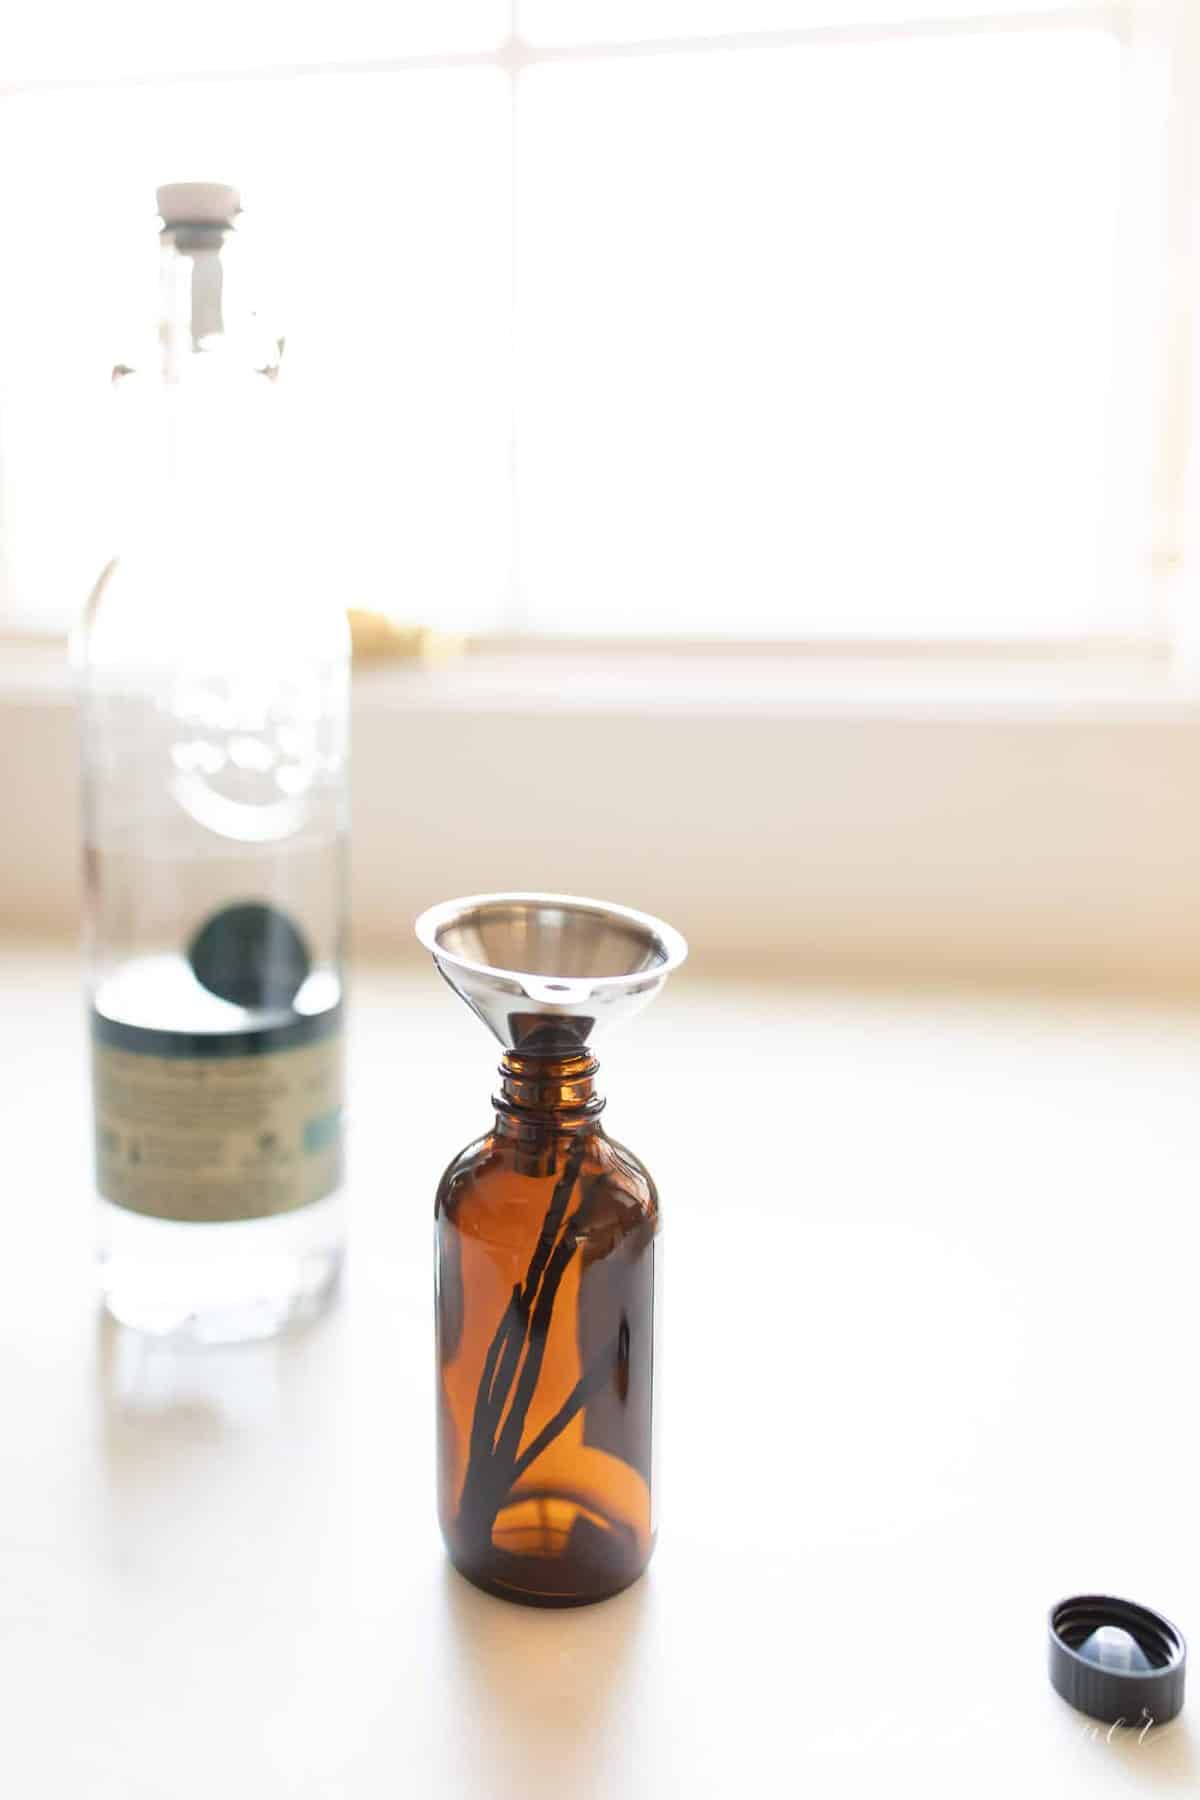 Homemade vanilla extract in an amber bottle and vodka on a white countertop. #homemadevanillaextract #vanilla #vanillabean